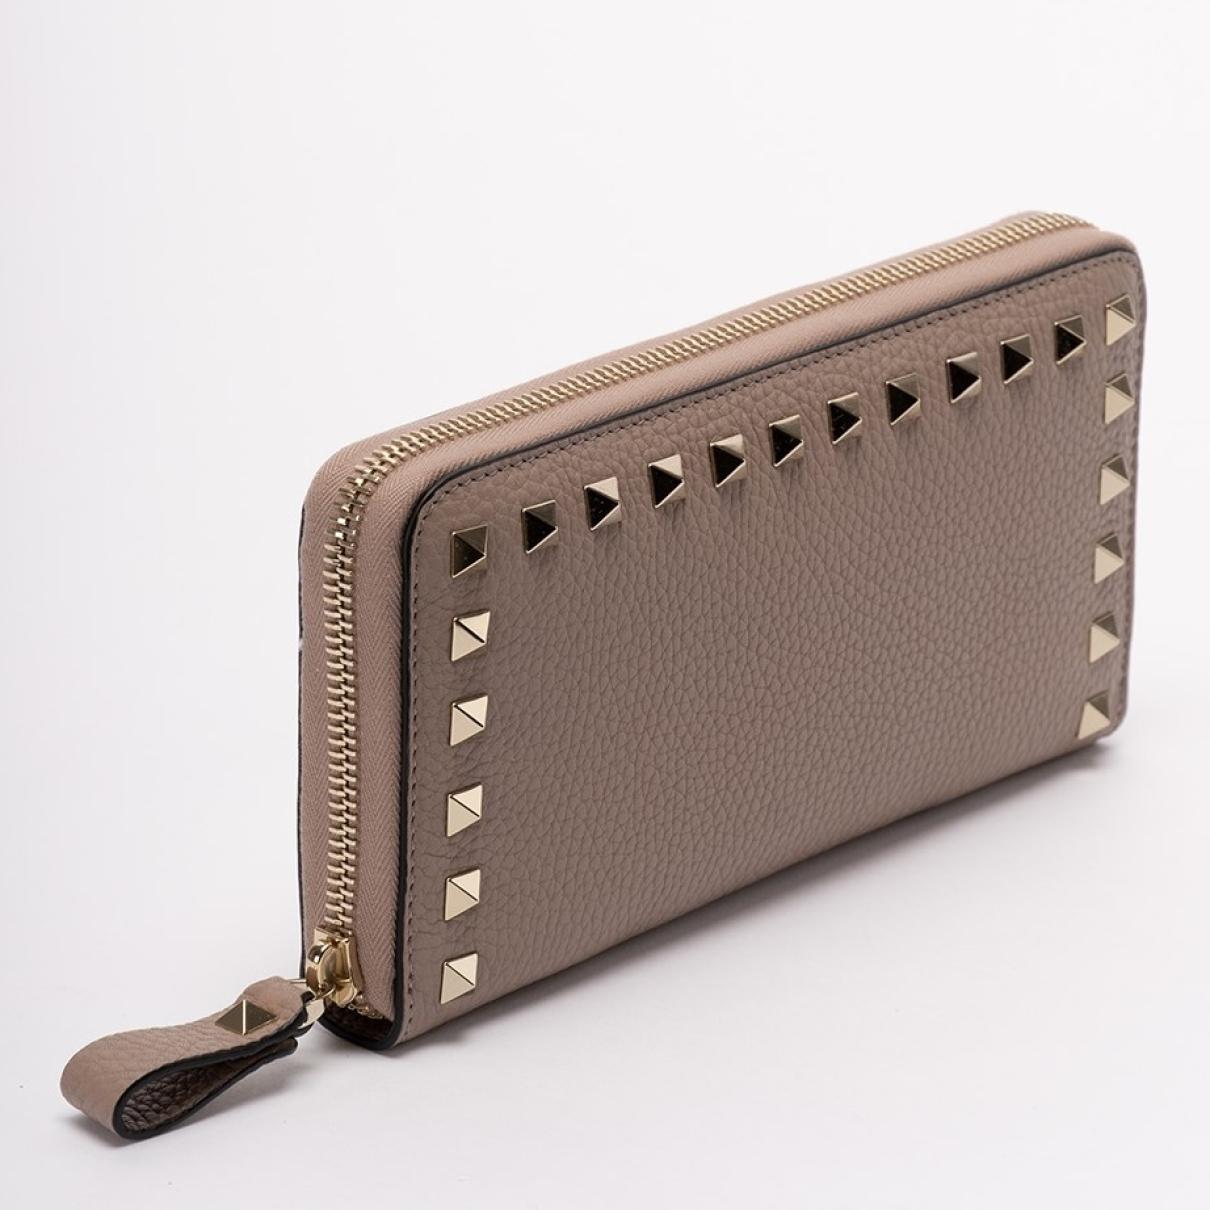 Rockstud leather wallet - 4